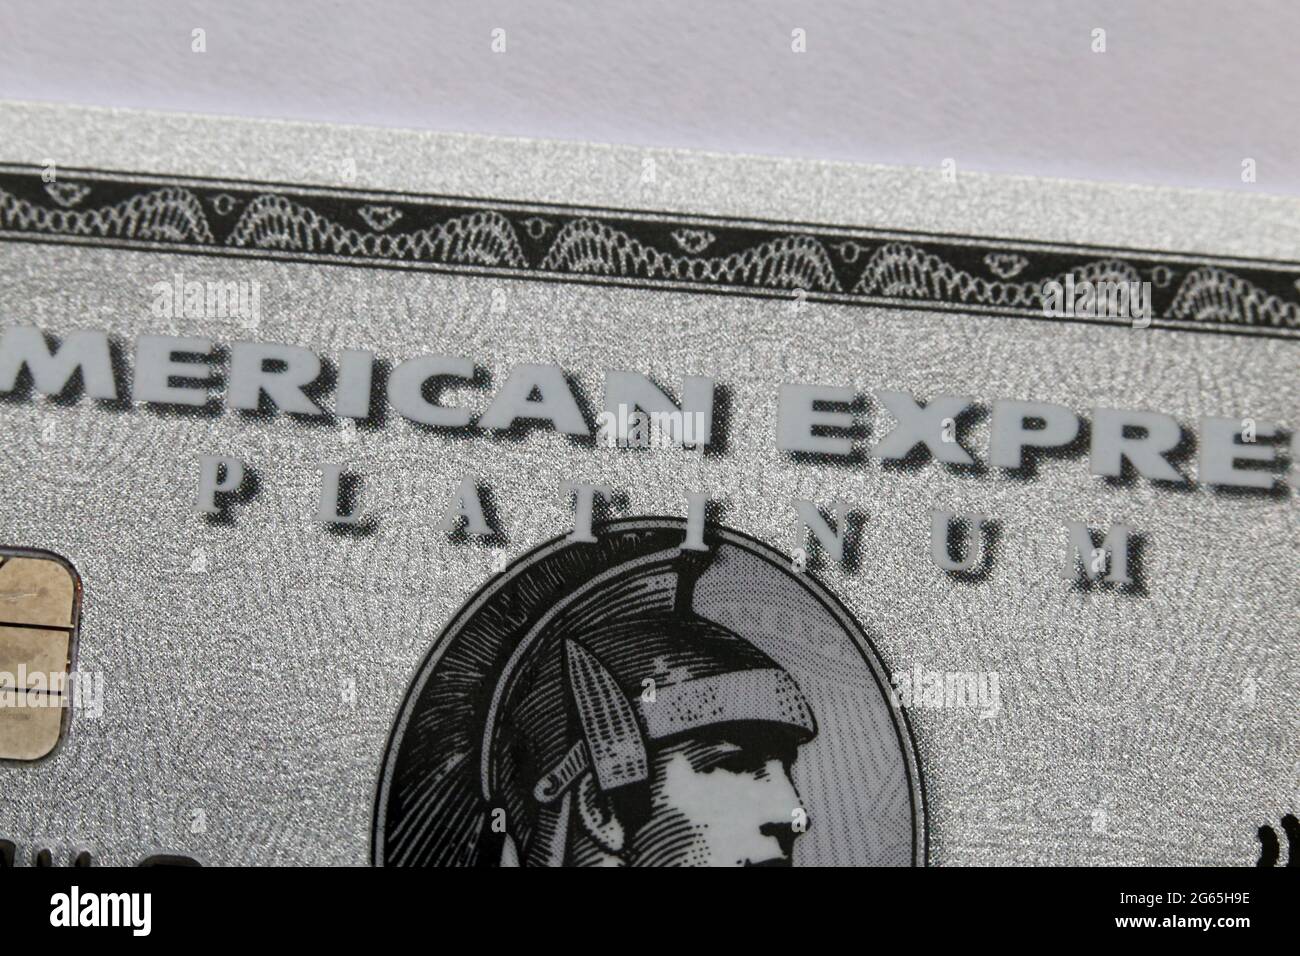 Carta American Express Platinum (Amex Platinum) in primo piano - questo è il vecchio Amex Platinum in plastica. Aprile 2020, Espoo, Finlandia. Foto Stock